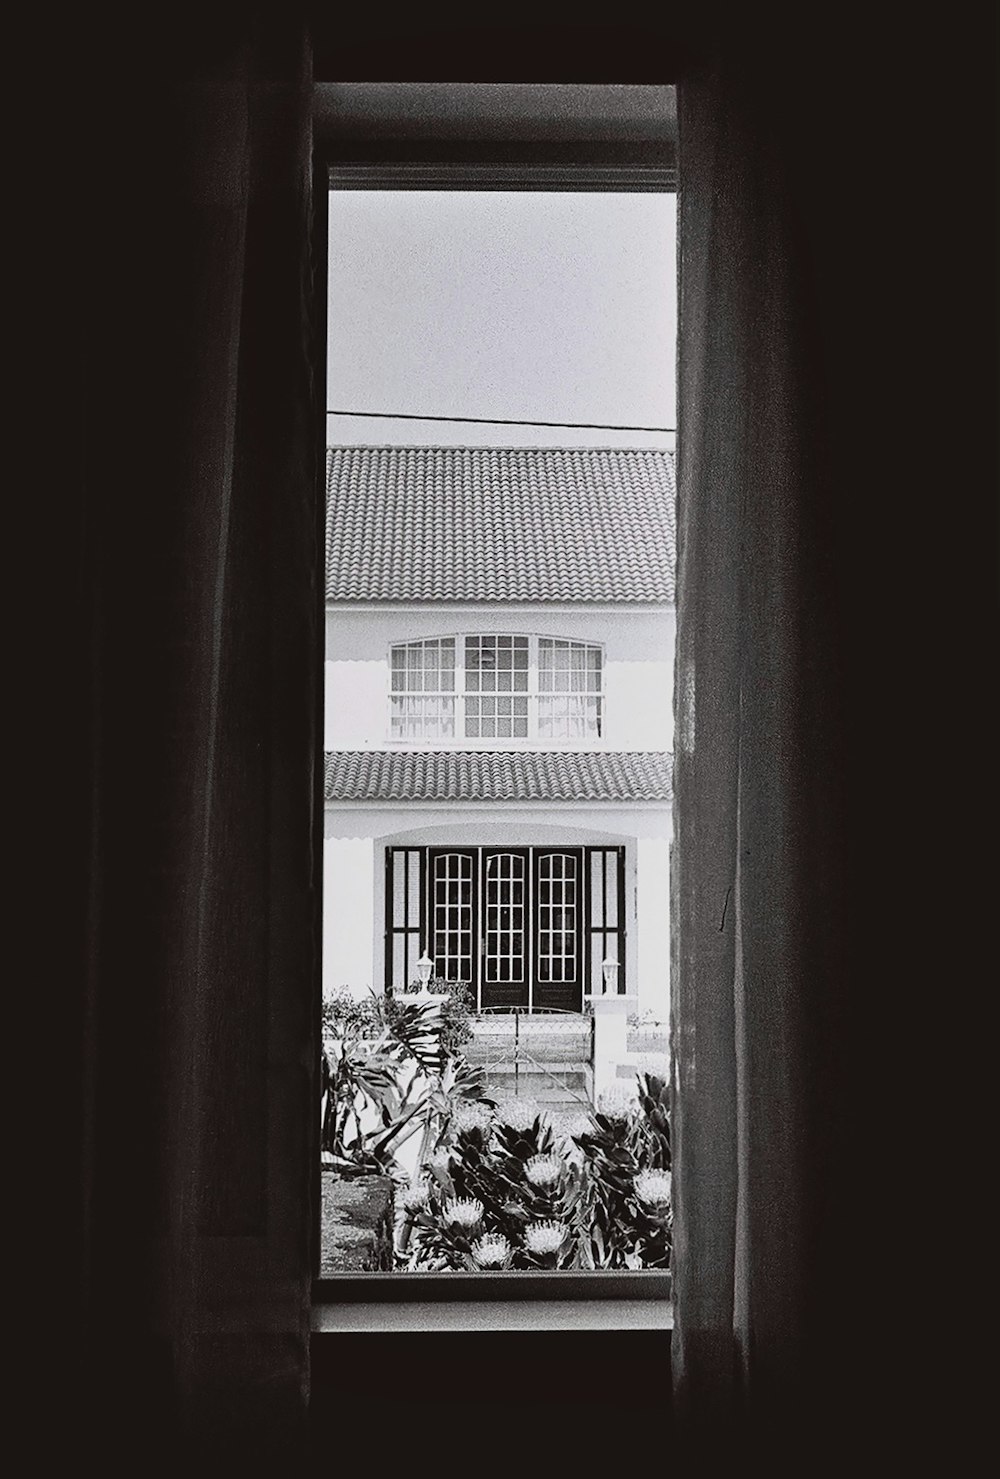 창문을 통해 보이는 집의 흑백 사진